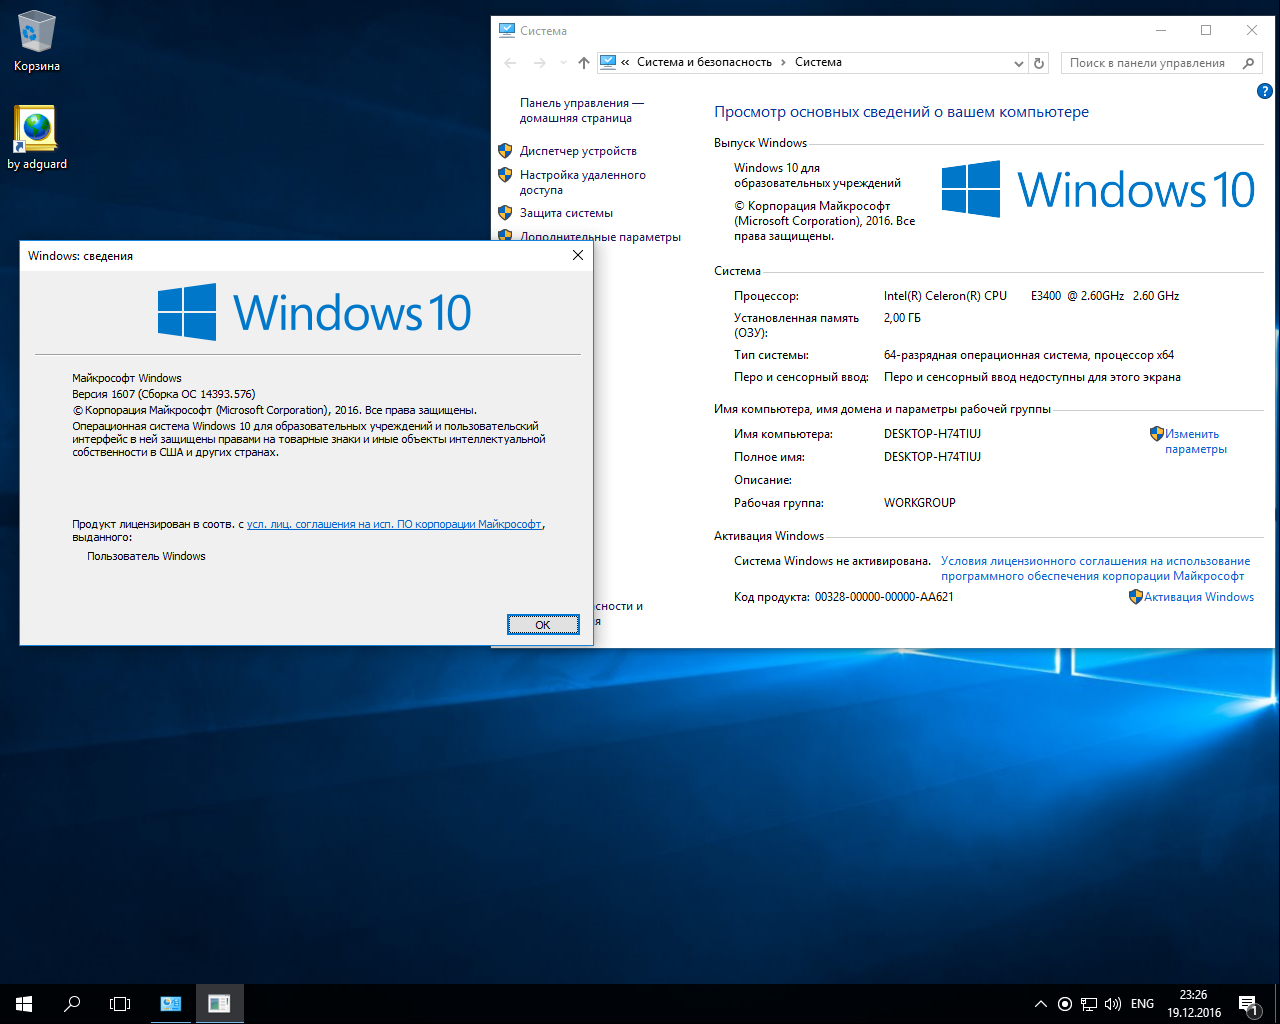 Windows 10 версия 1607. Windows 10 x64 build 1607. Лицензионное соглашение о Windows 10. Виндовс активатор 10 Version 1607.